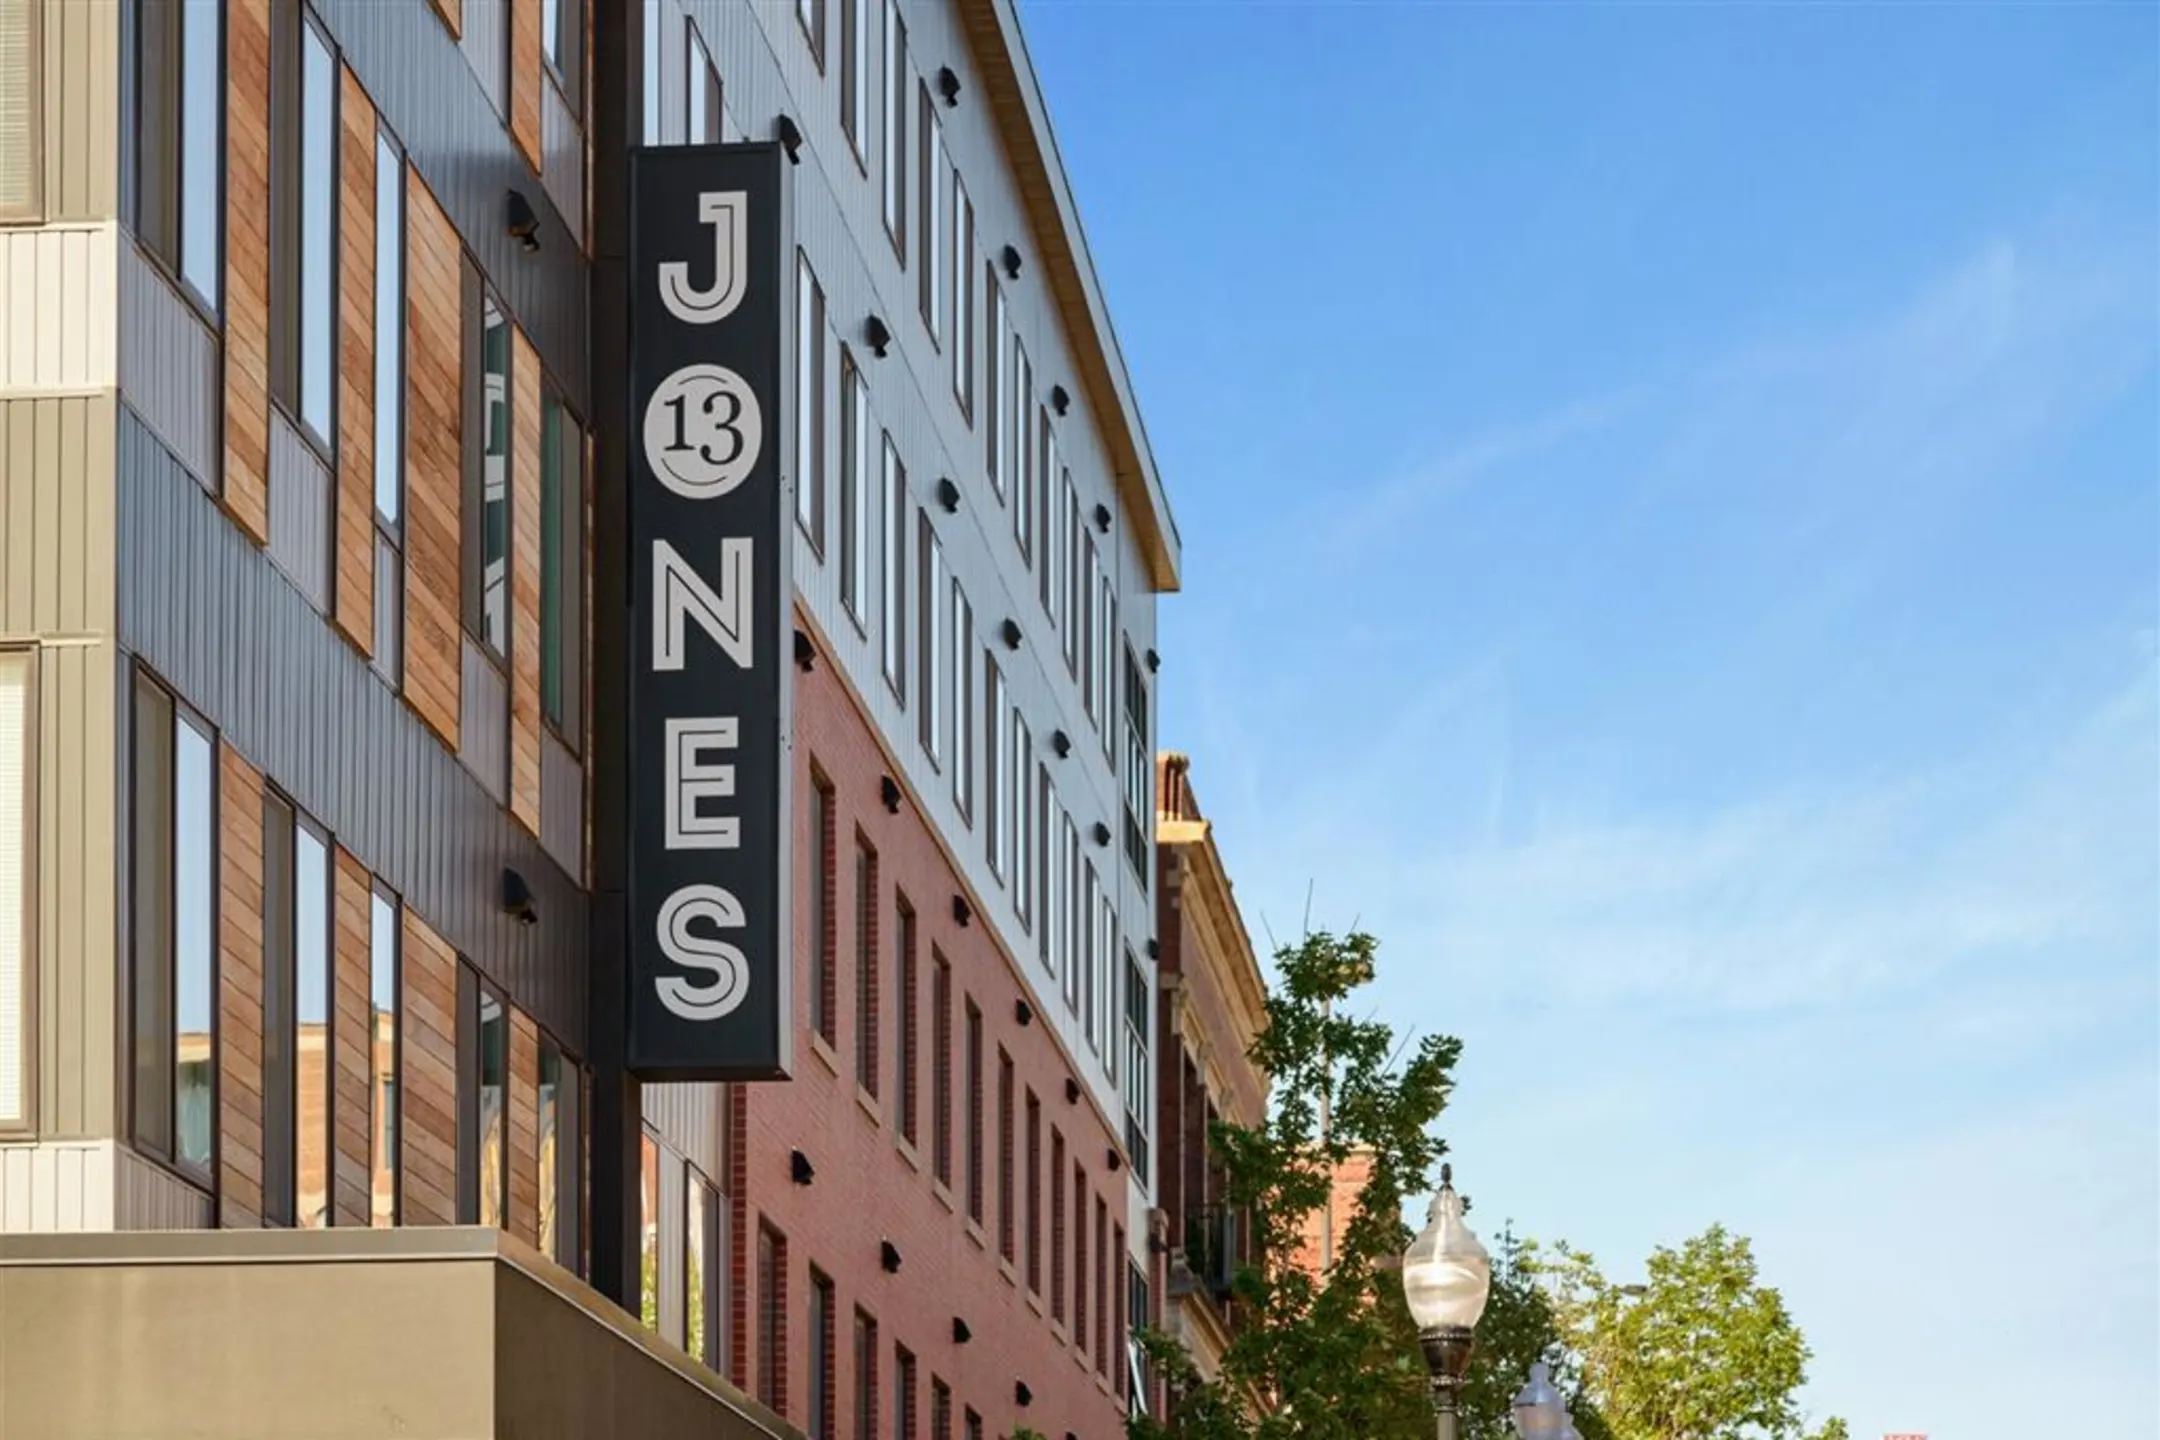 Building - Jones 13 - Omaha, NE